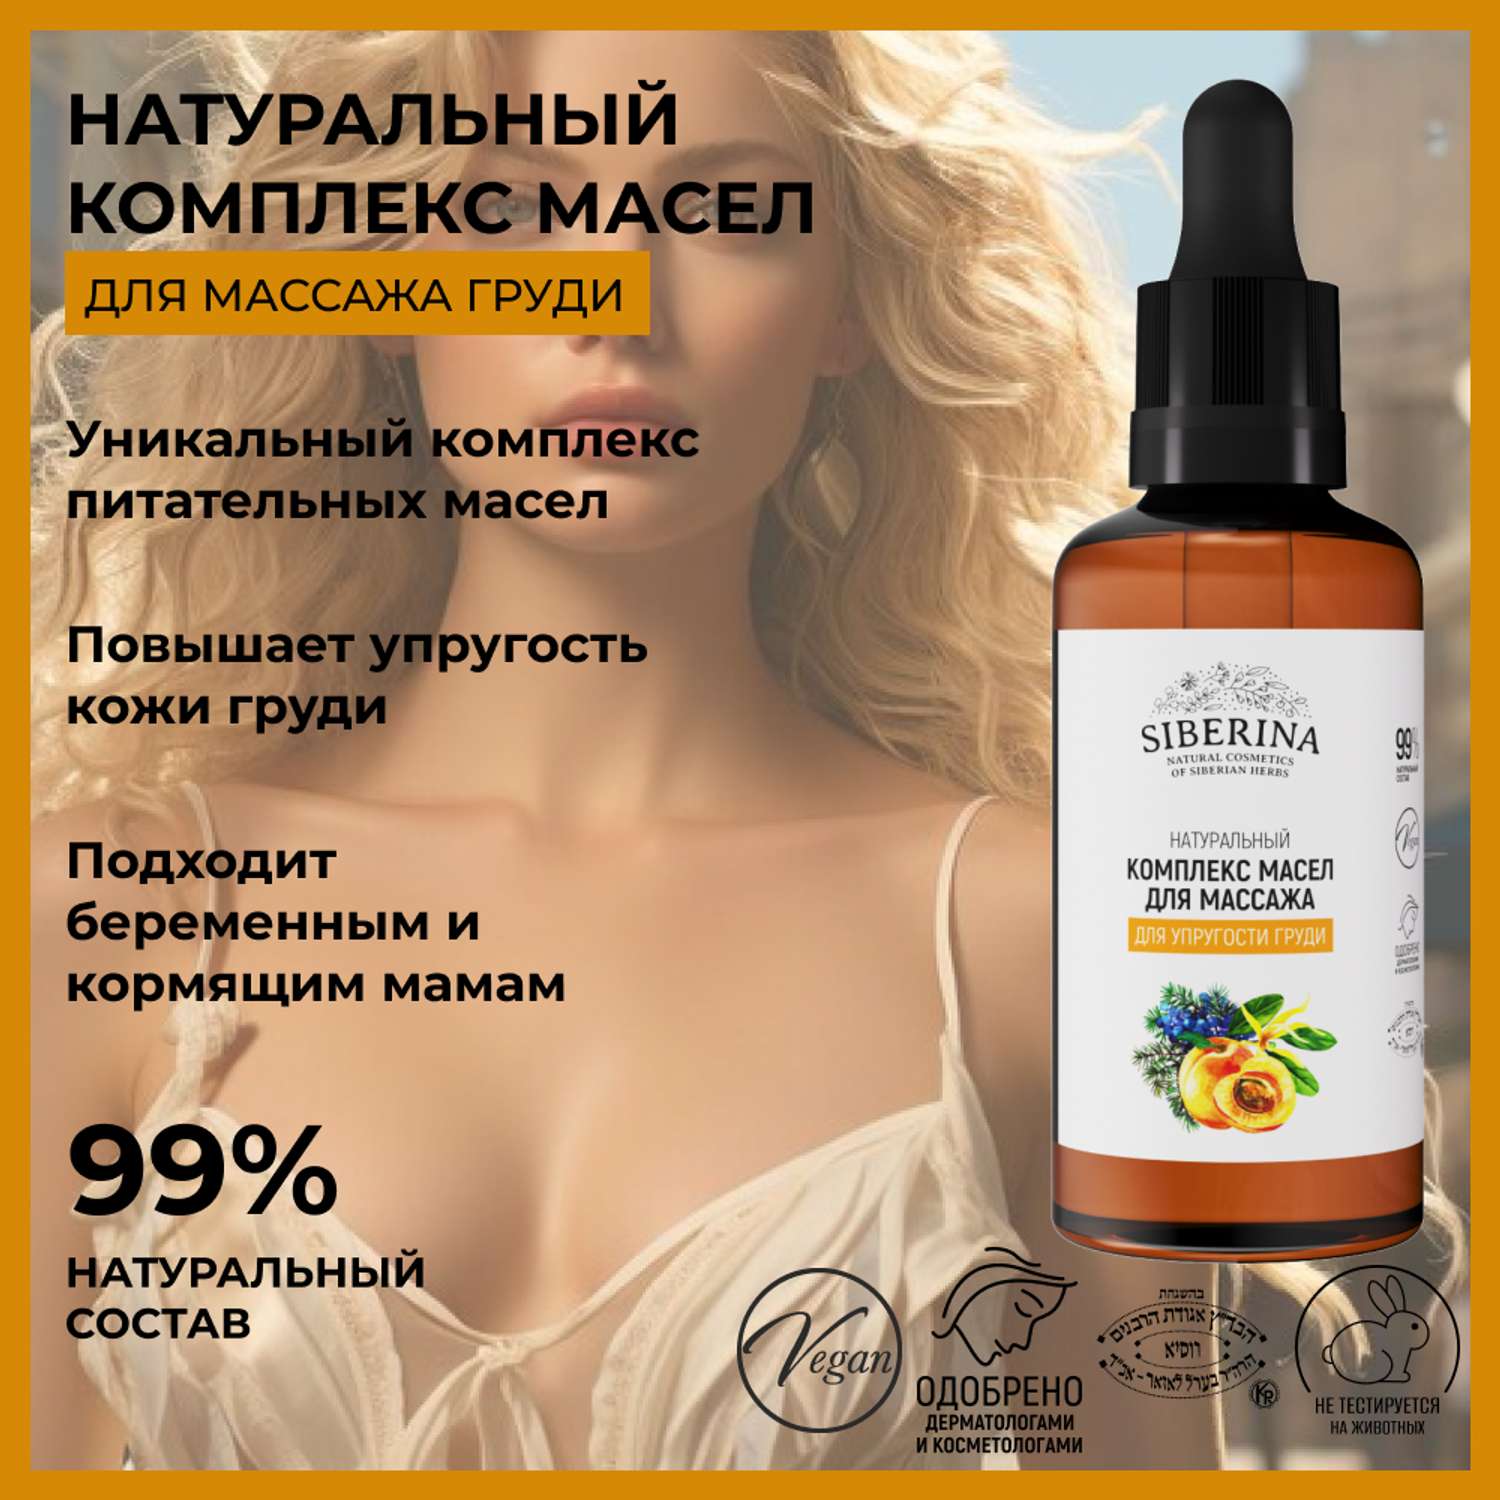 Комплекс масел для массажа Siberina натуральных «Для упругости груди» для массажа 50 мл - фото 2